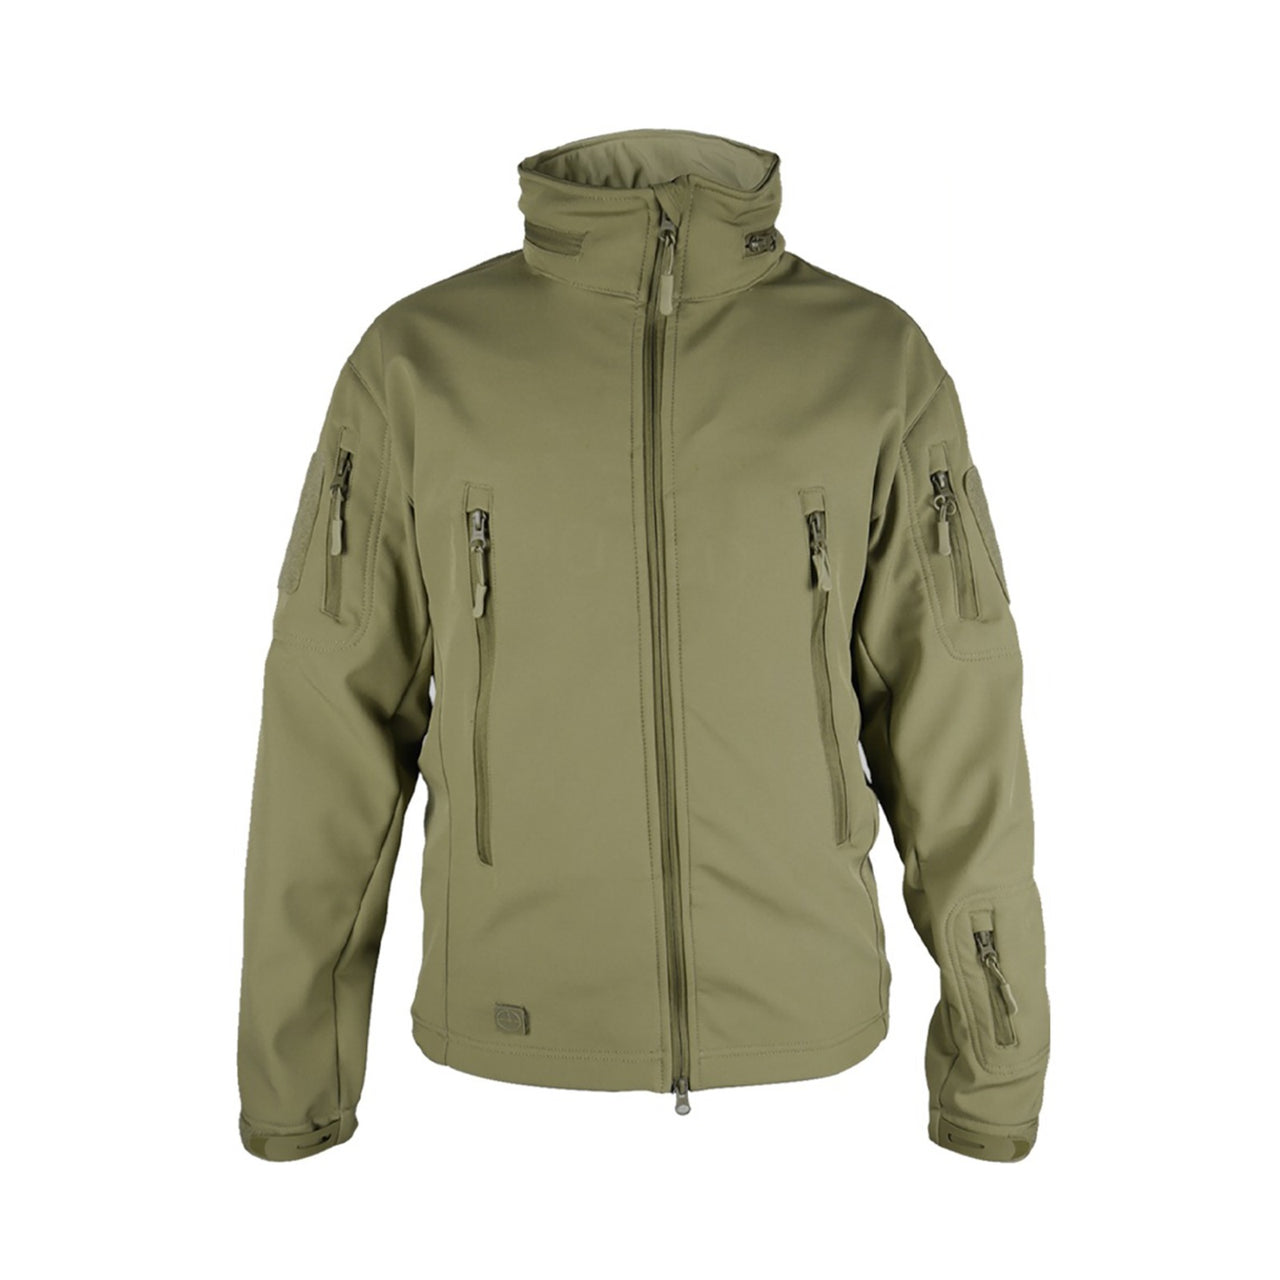 Tactical Softshell Police Jacket - Khaki